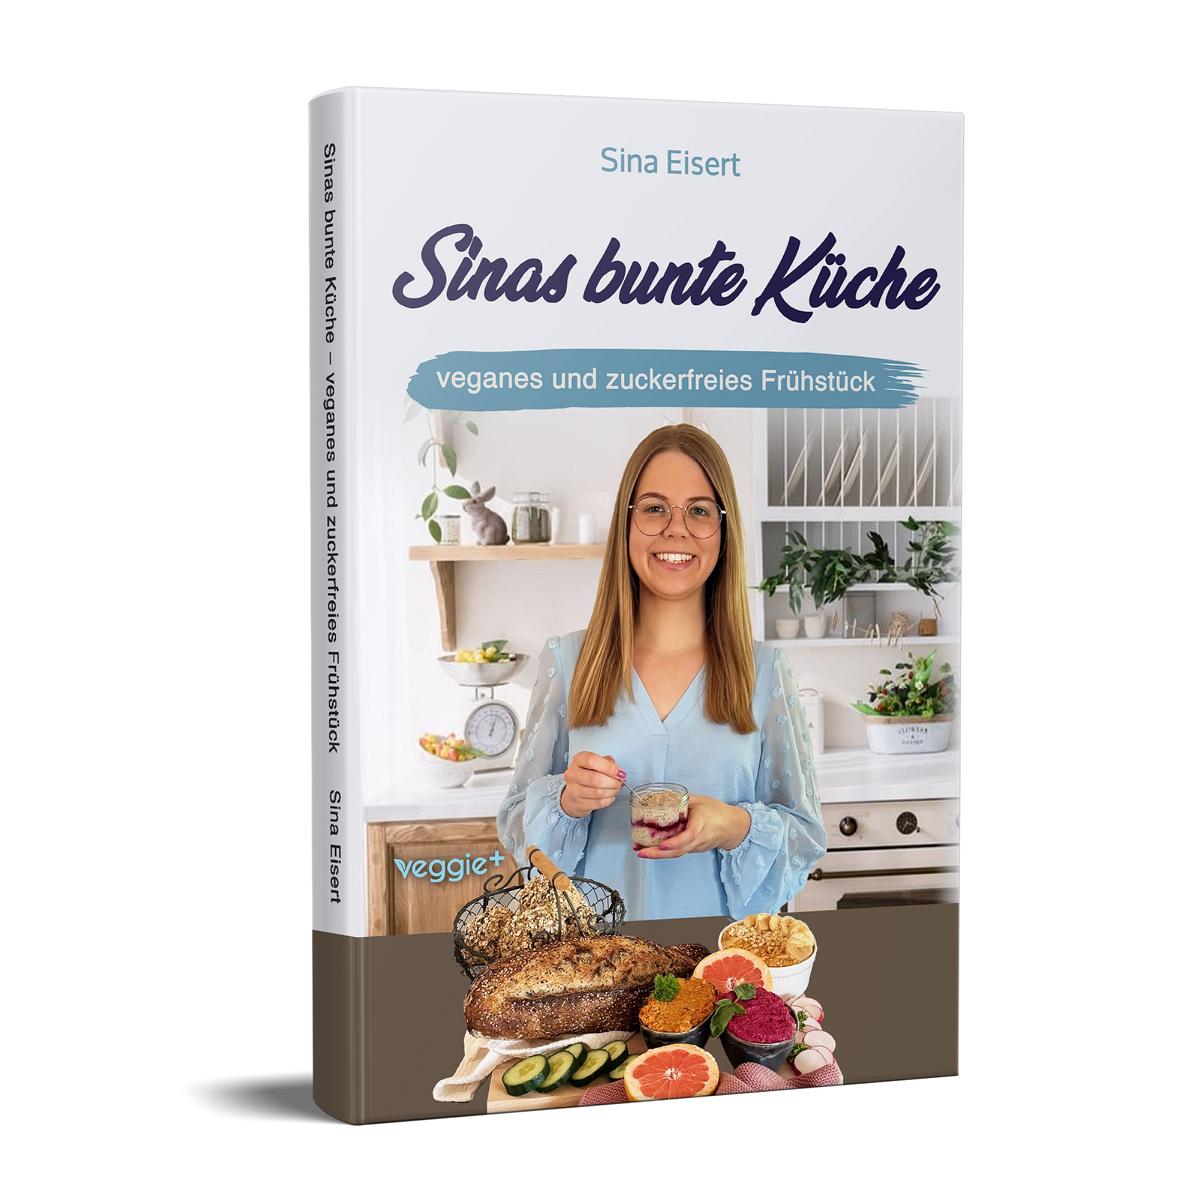 Sinas bunte Küche – veganes und zuckerfreies Frühstück: Das große Kochbuch mit 70 veganen Frühstücksrezepten ohne Zucker für eine gesunde Ernährung von Sina Eisert im veggie + Verlag